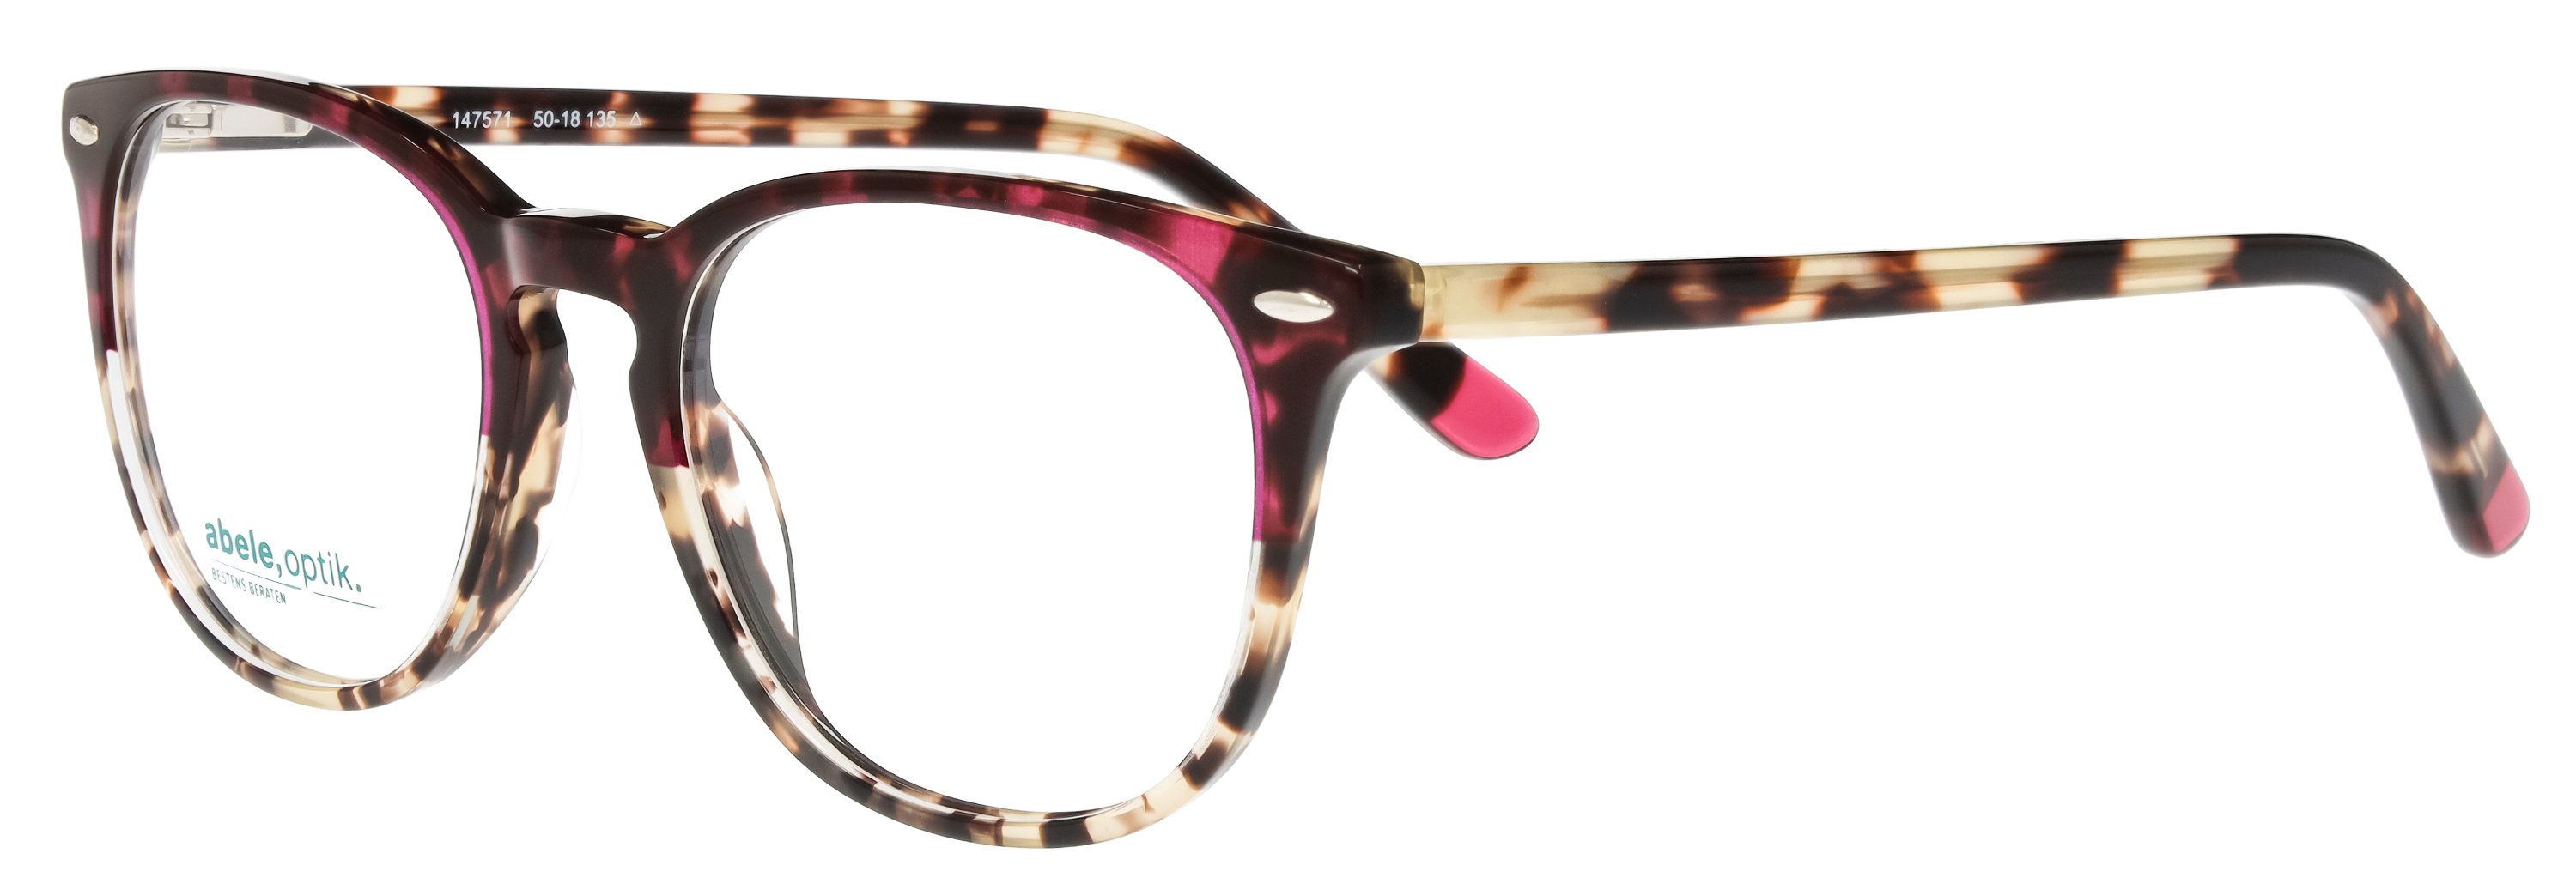 abele optik Brille für Damen pink/braun gemustert 147571